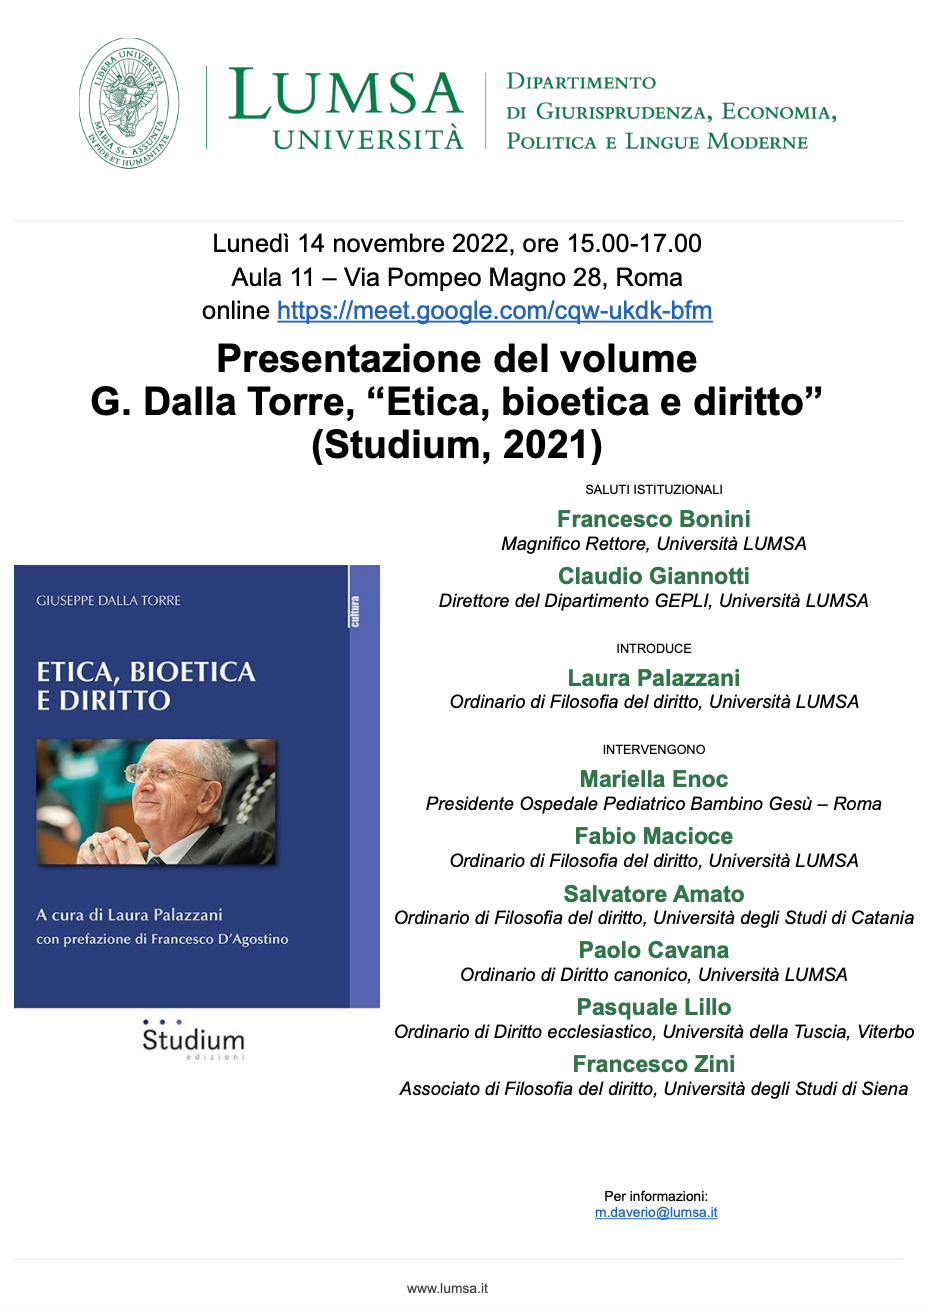 (Italiano) 14 novembre 2022 – Presentazione del volume “Etica, bioetica e diritto”